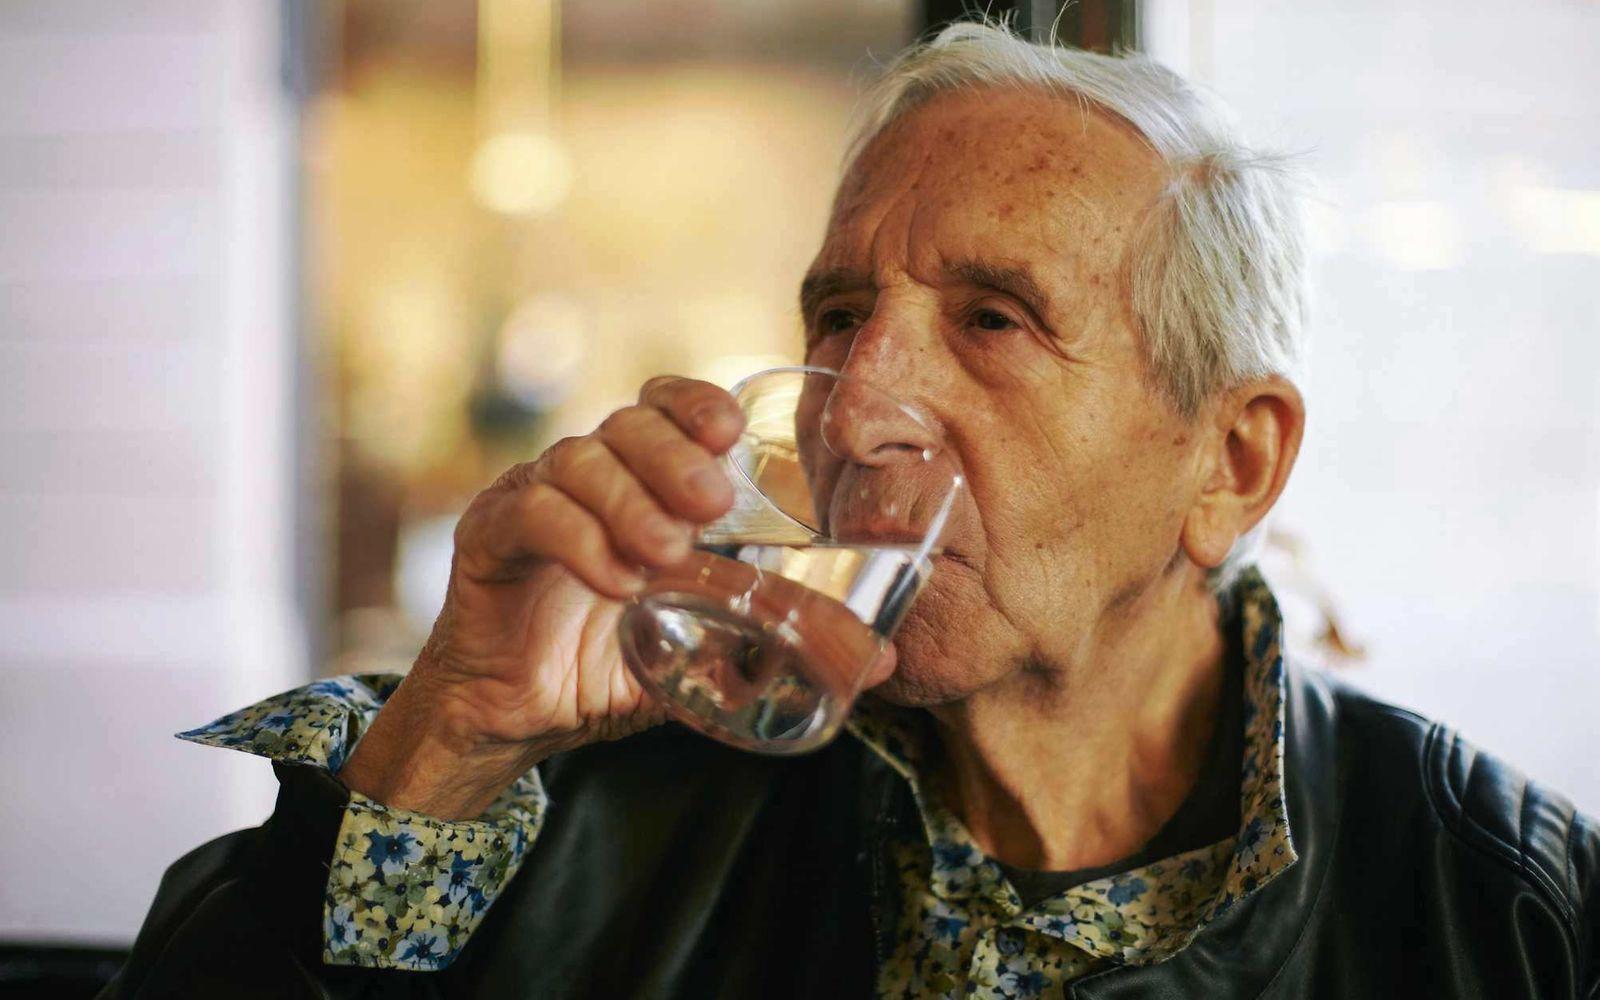 Prostatabeschwerden: Älterer Mann trinkt ein Glas Wasser.